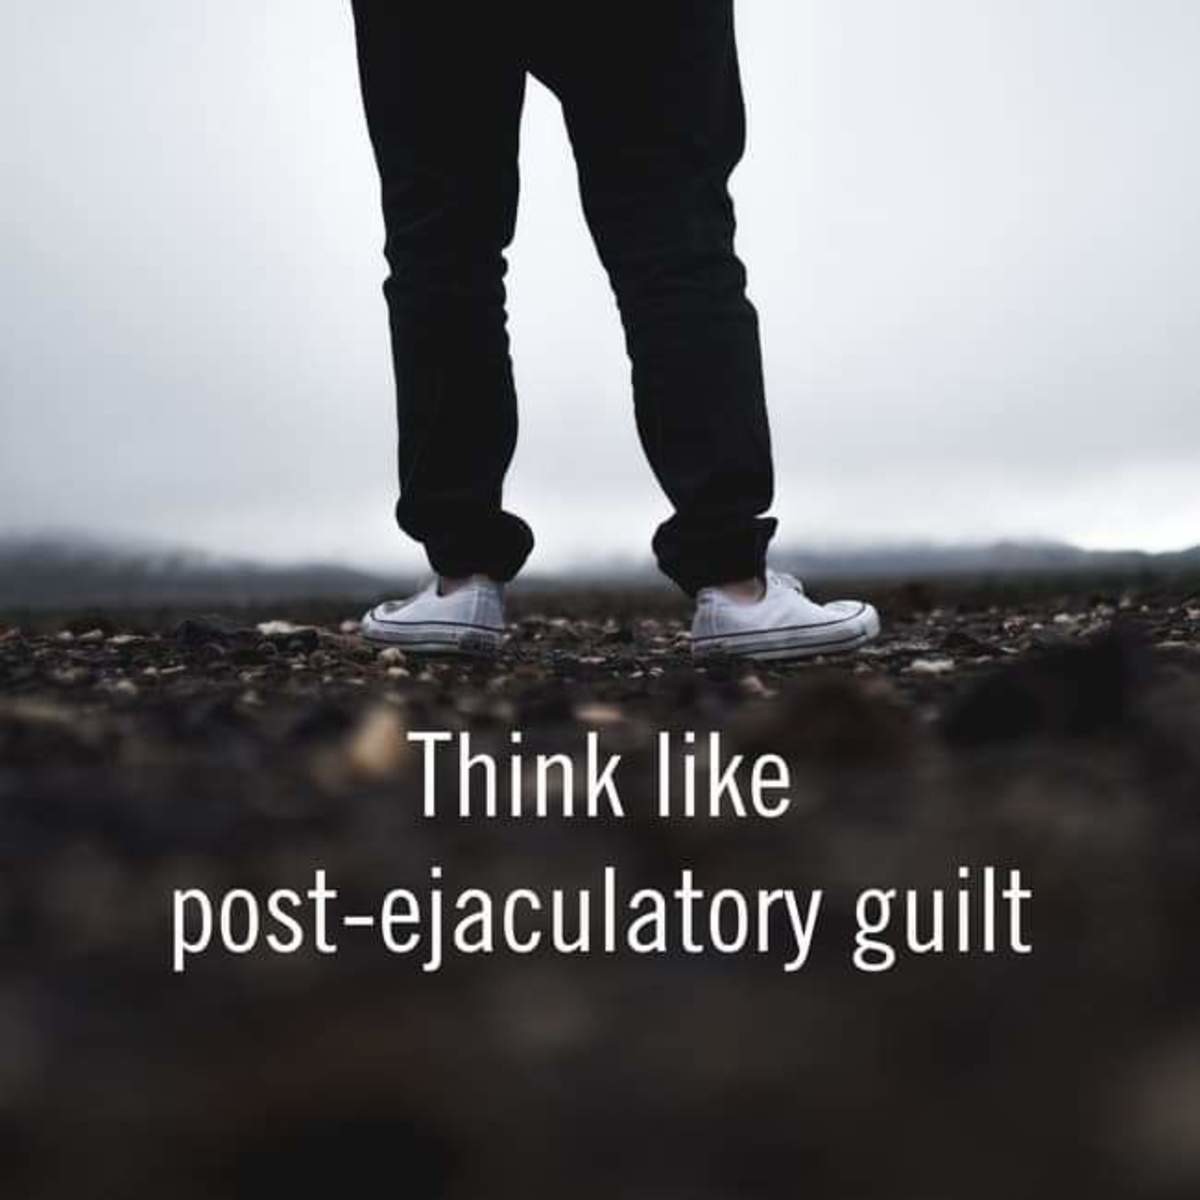 Nut guilt post Post Nut